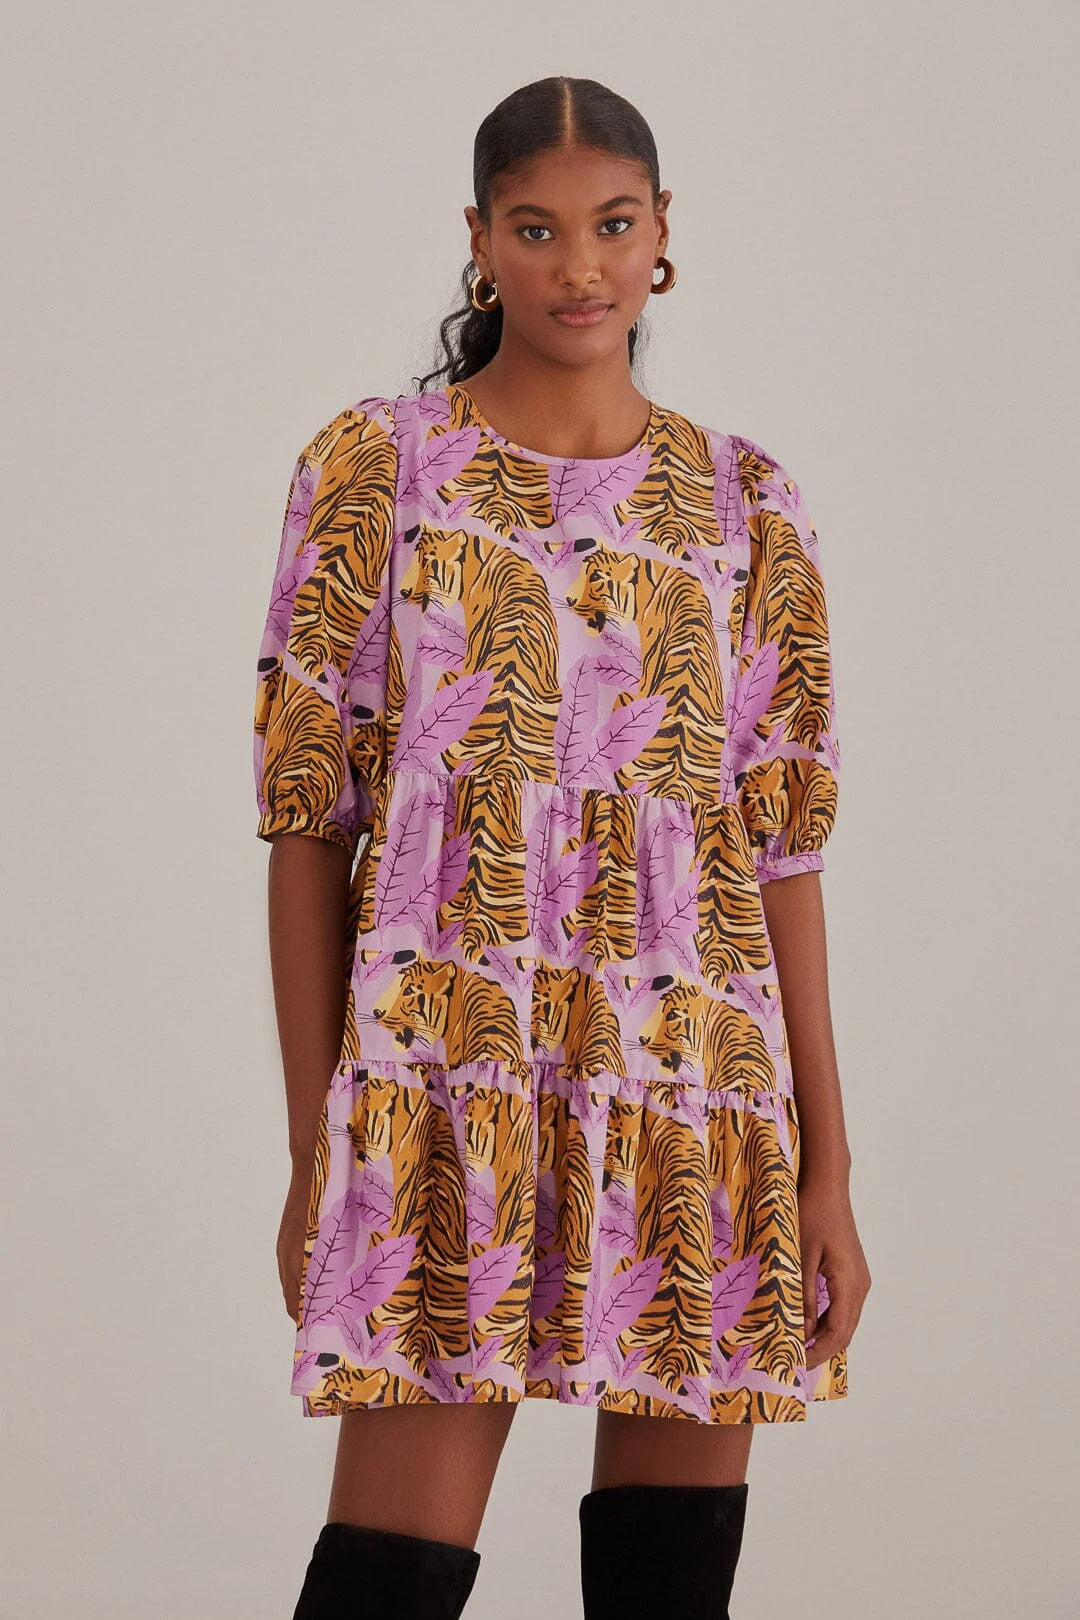 FARMRio Lavender Tiger Leaves Puff Slv Dress